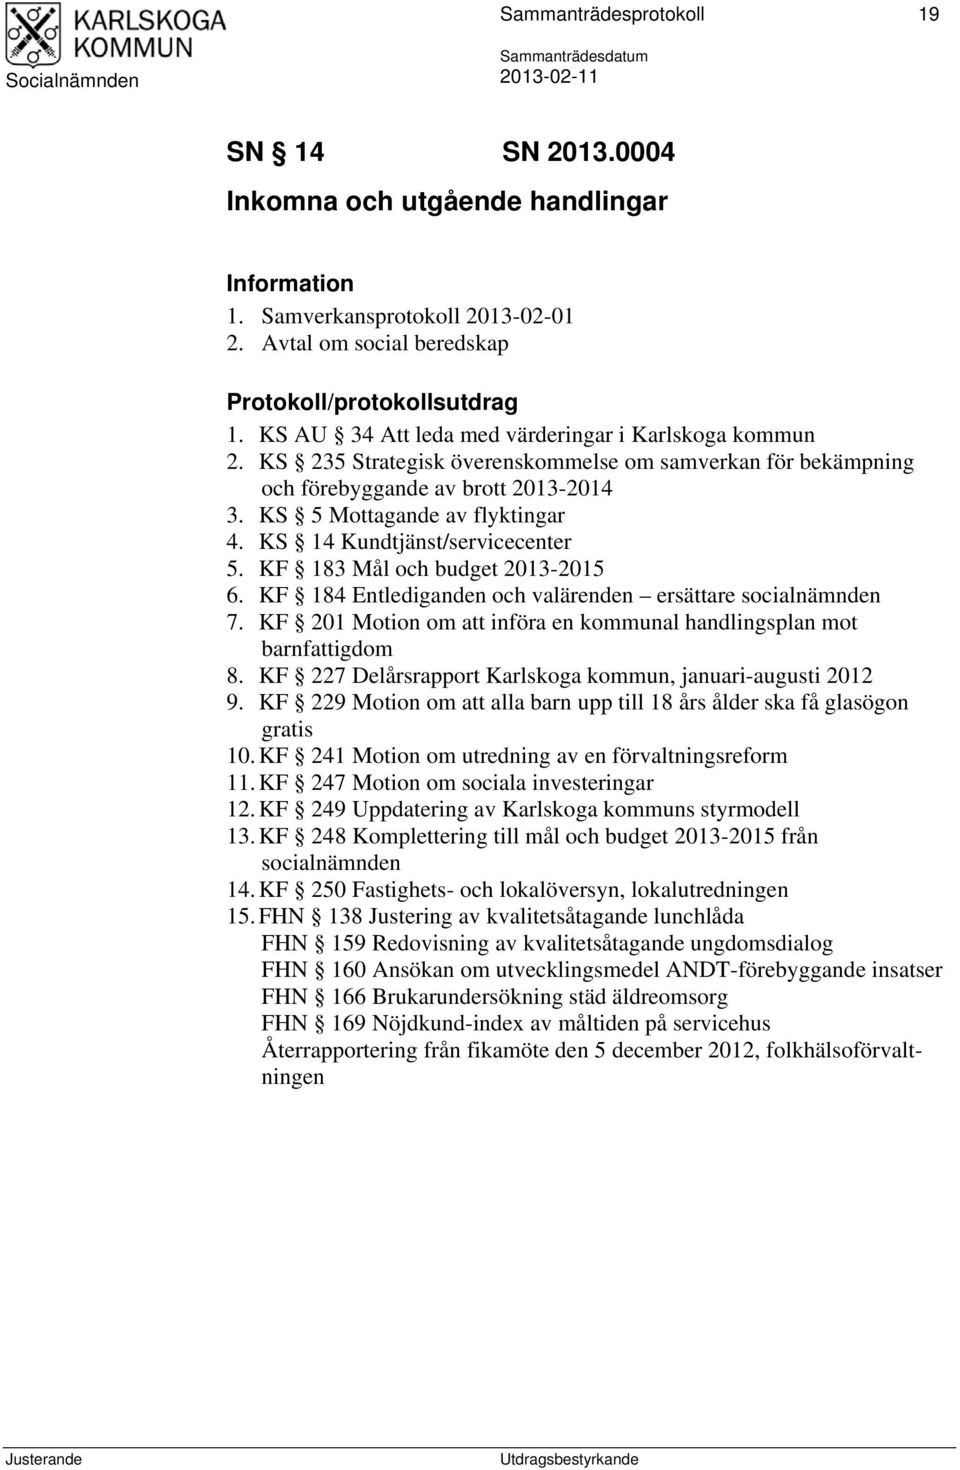 KS 14 Kundtjänst/servicecenter 5. KF 183 Mål och budget 2013-2015 6. KF 184 Entlediganden och valärenden ersättare socialnämnden 7.